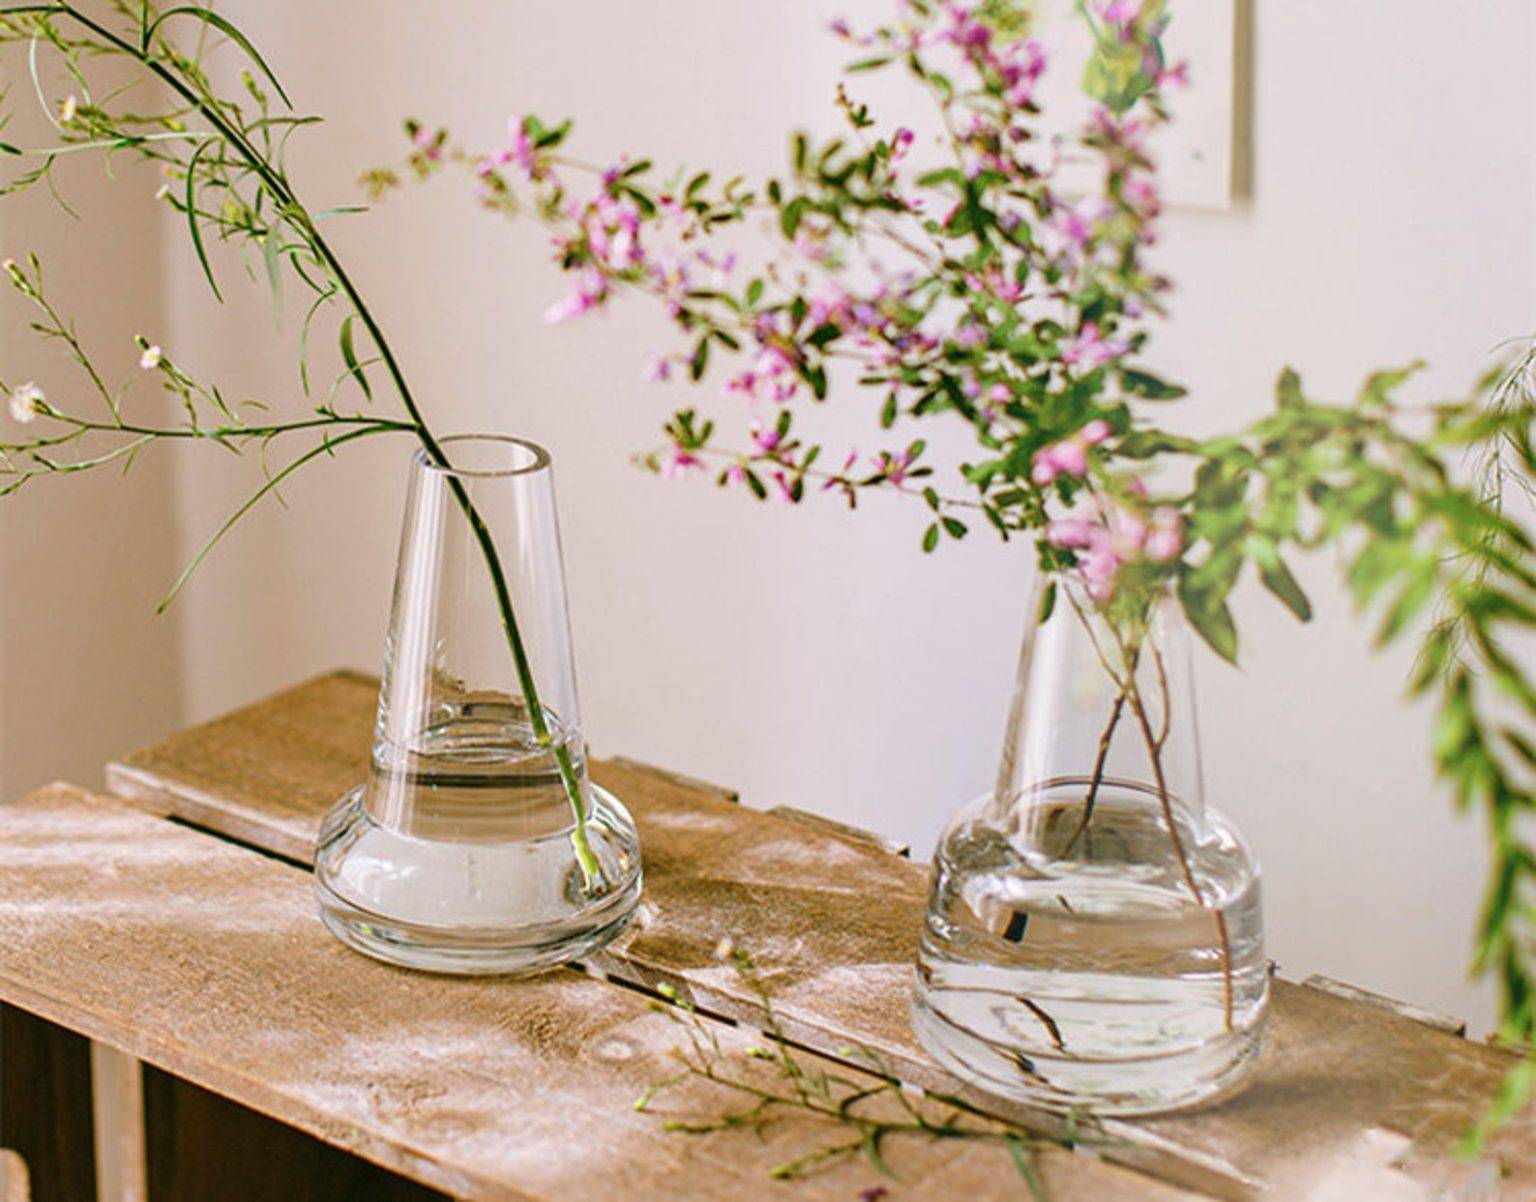 hình ảnh cận cảnh 2 bình hoa thủy tinh đặt trên bàn gỗ phòng bếp